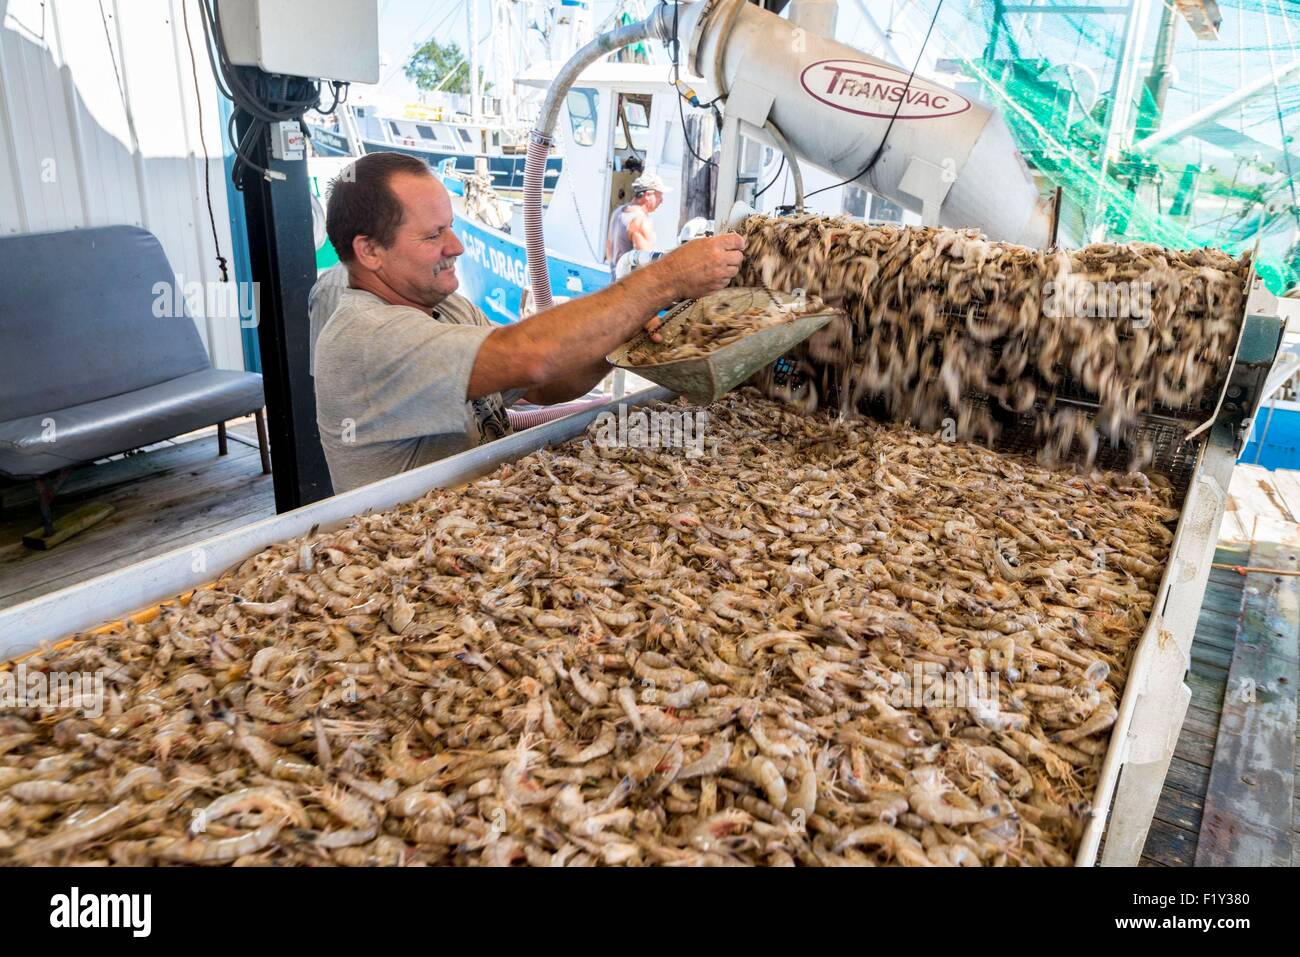 United States, Louisiana, Cocodrie, Unloading shrimps on the bayou Stock Photo